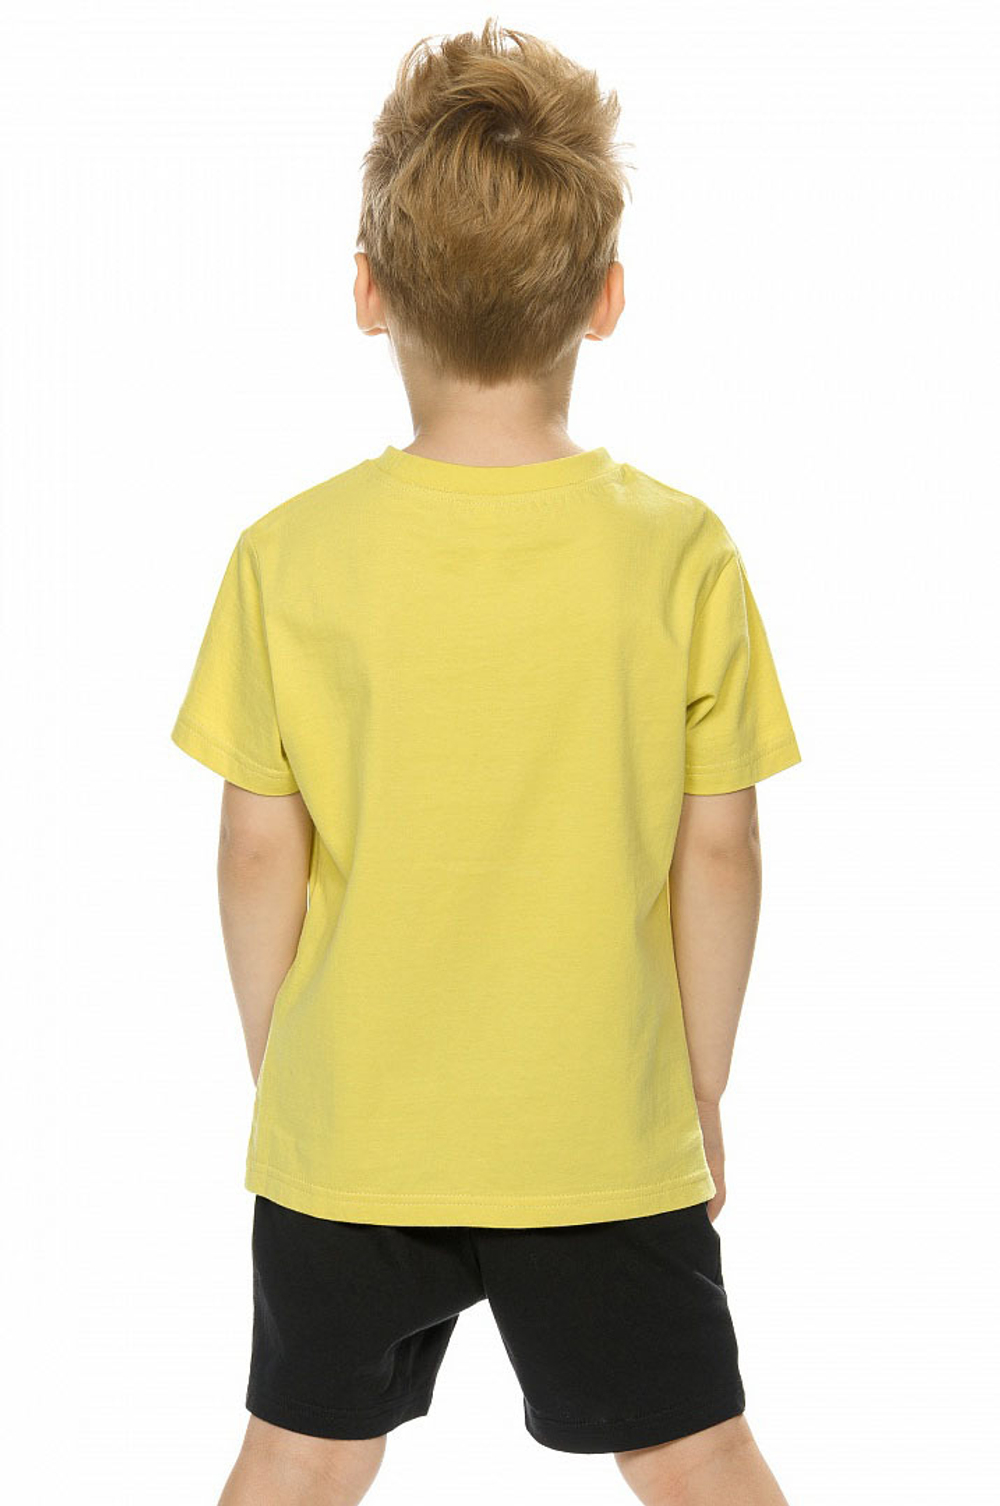 Комплект для мальчиков футболка и шорты желтый